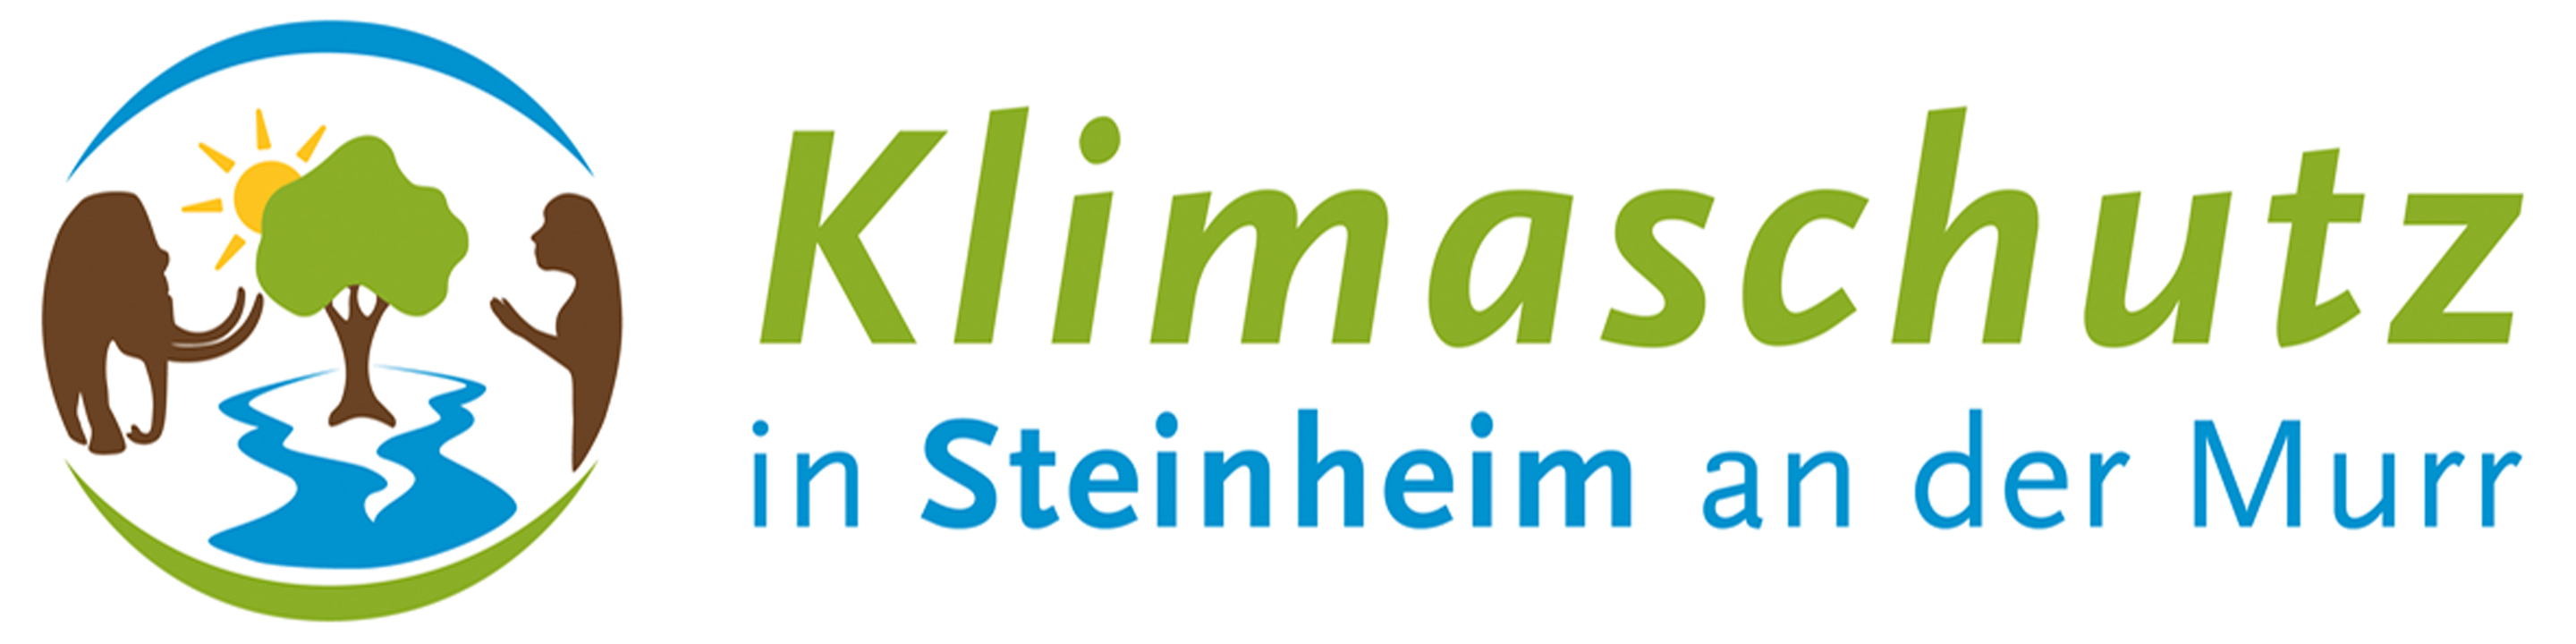 Das Klimaschutzlogo der Stadt Steinheim an der Murr mit Schriftzug